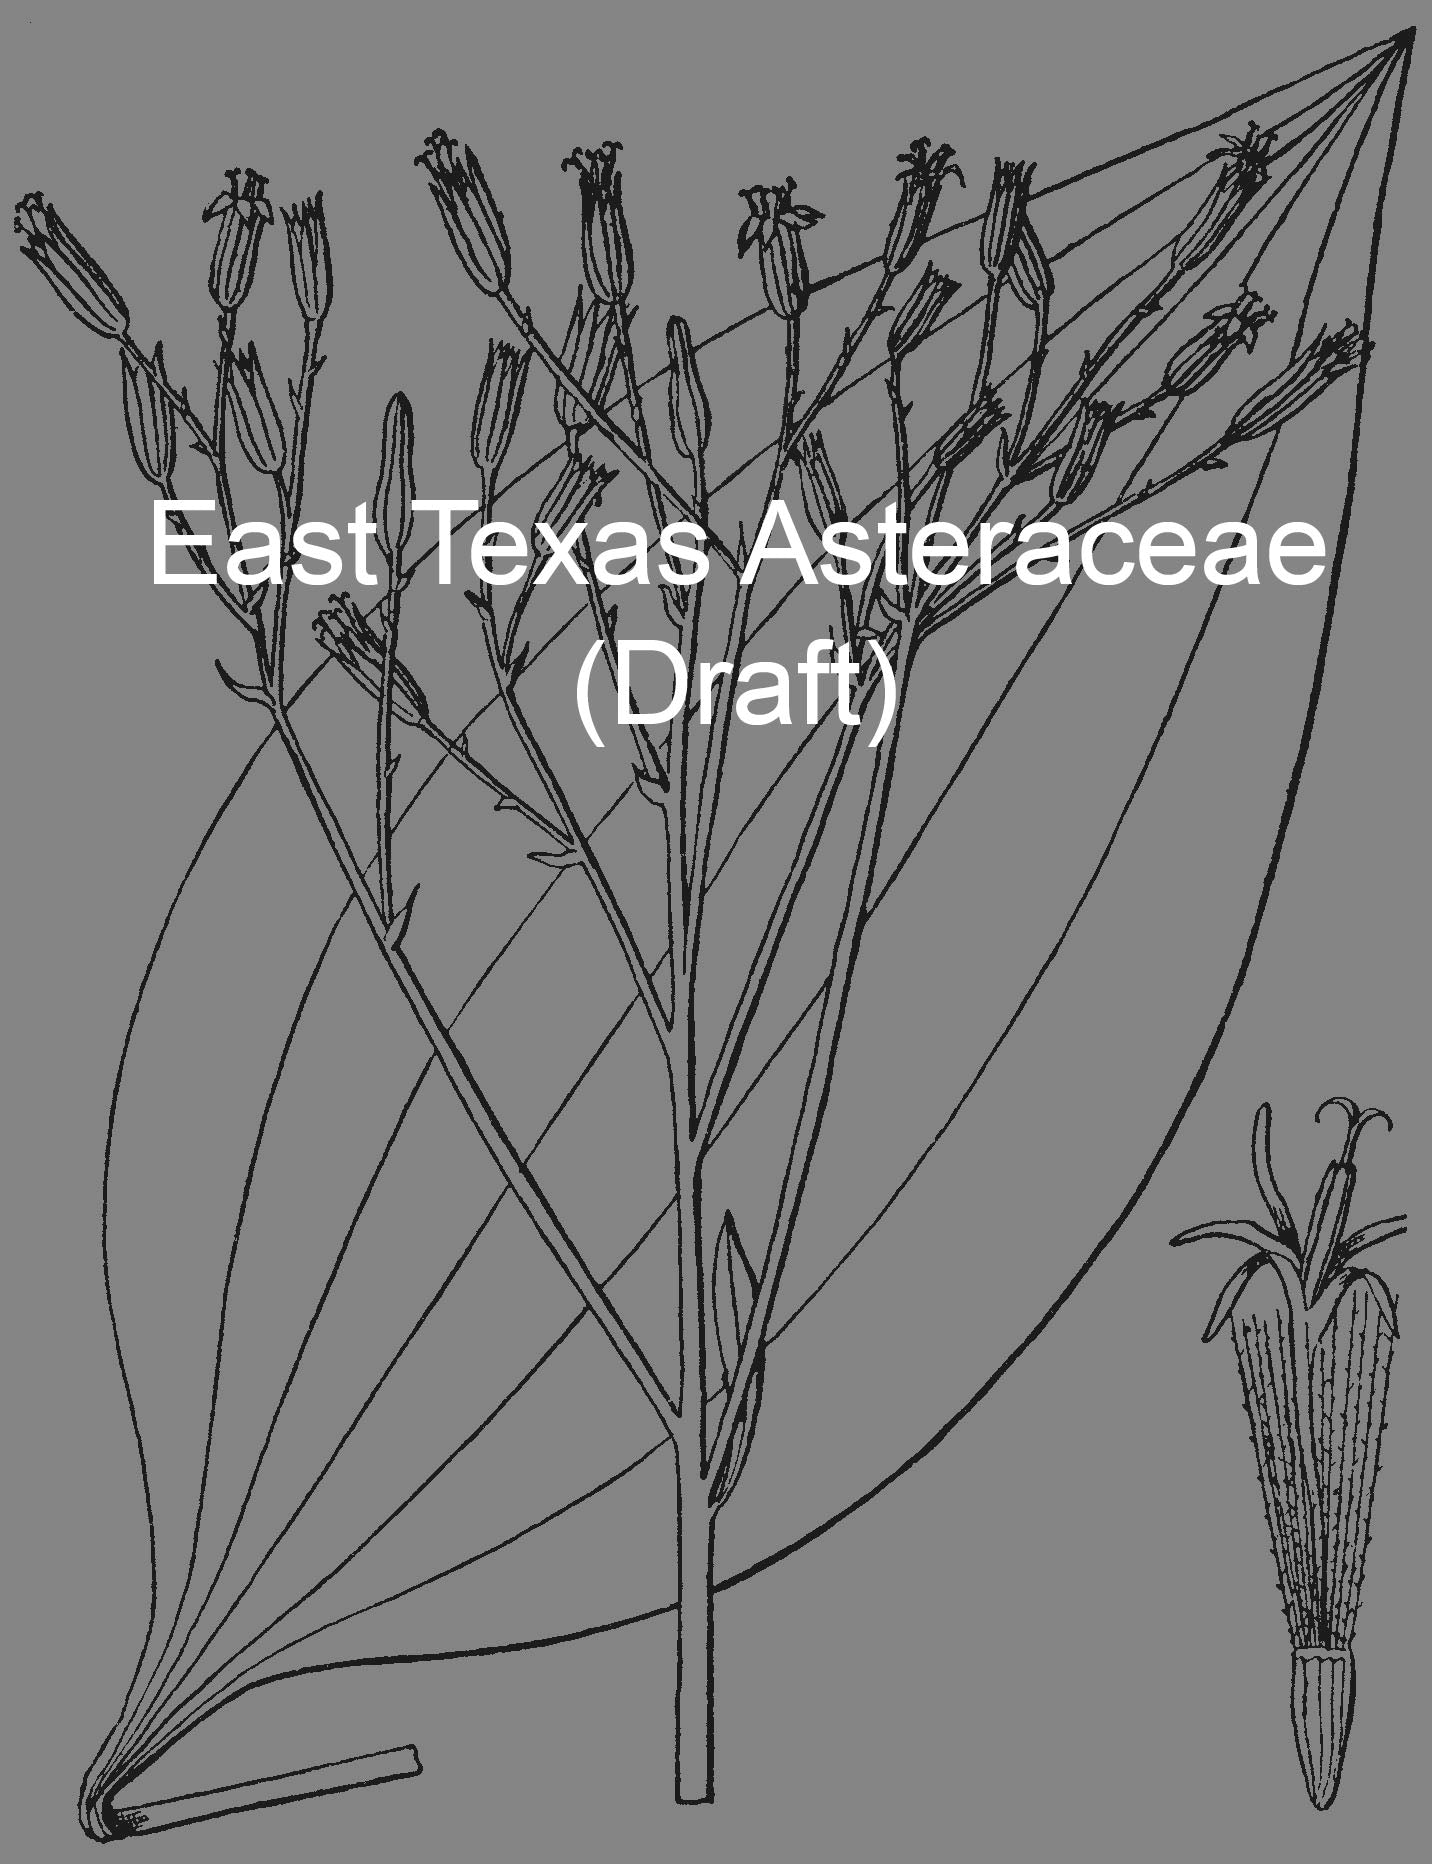 Asteraceae of East Texas (draft)